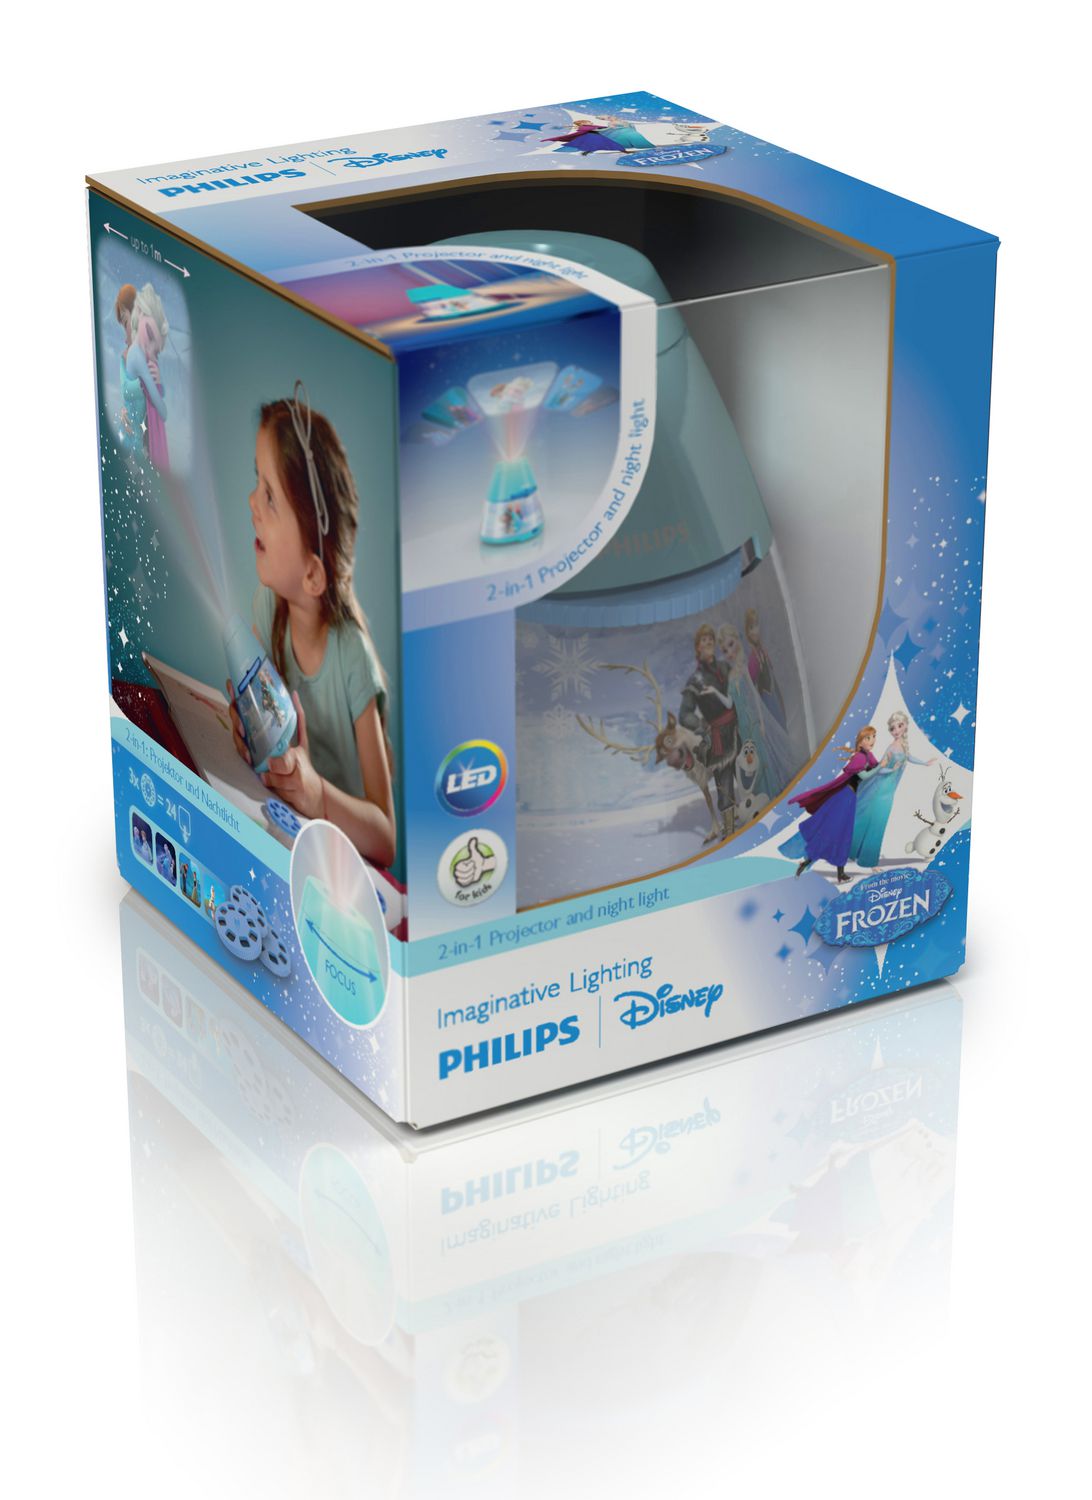 Philips 717670816 Disney Lampe Torche Reine des Neiges pour Enfant  Plastique 5,5 x 2,8